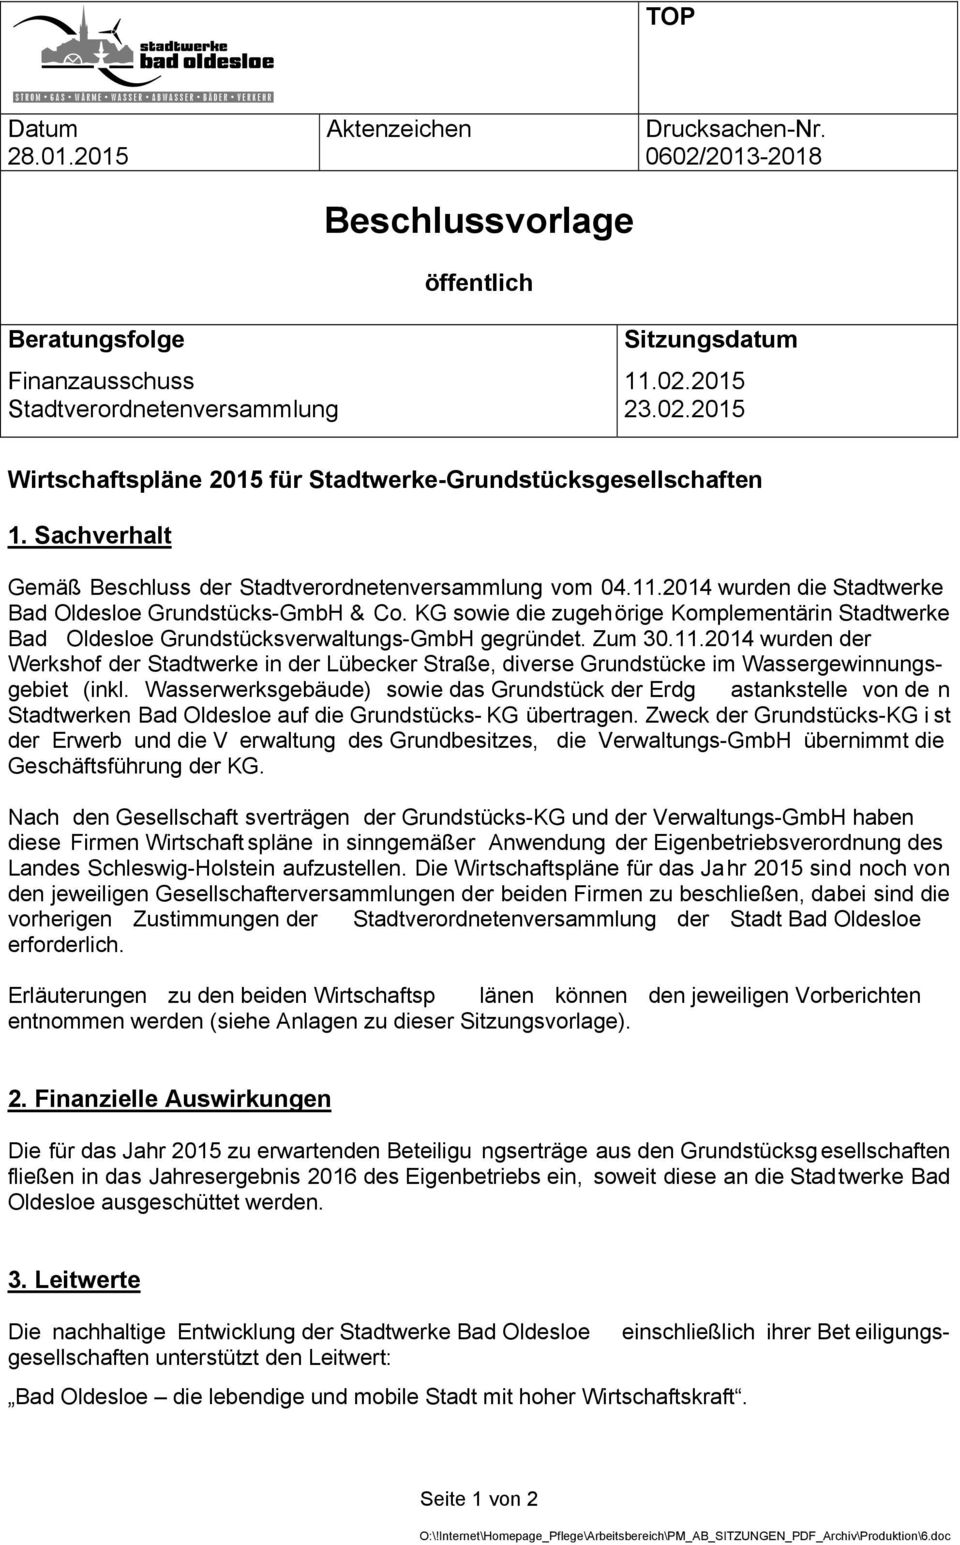 KG sowie die zugehörige Komplementärin Stadtwerke Bad Oldesloe Grundstücksverwaltungs-GmbH gegründet. Zum 30.11.